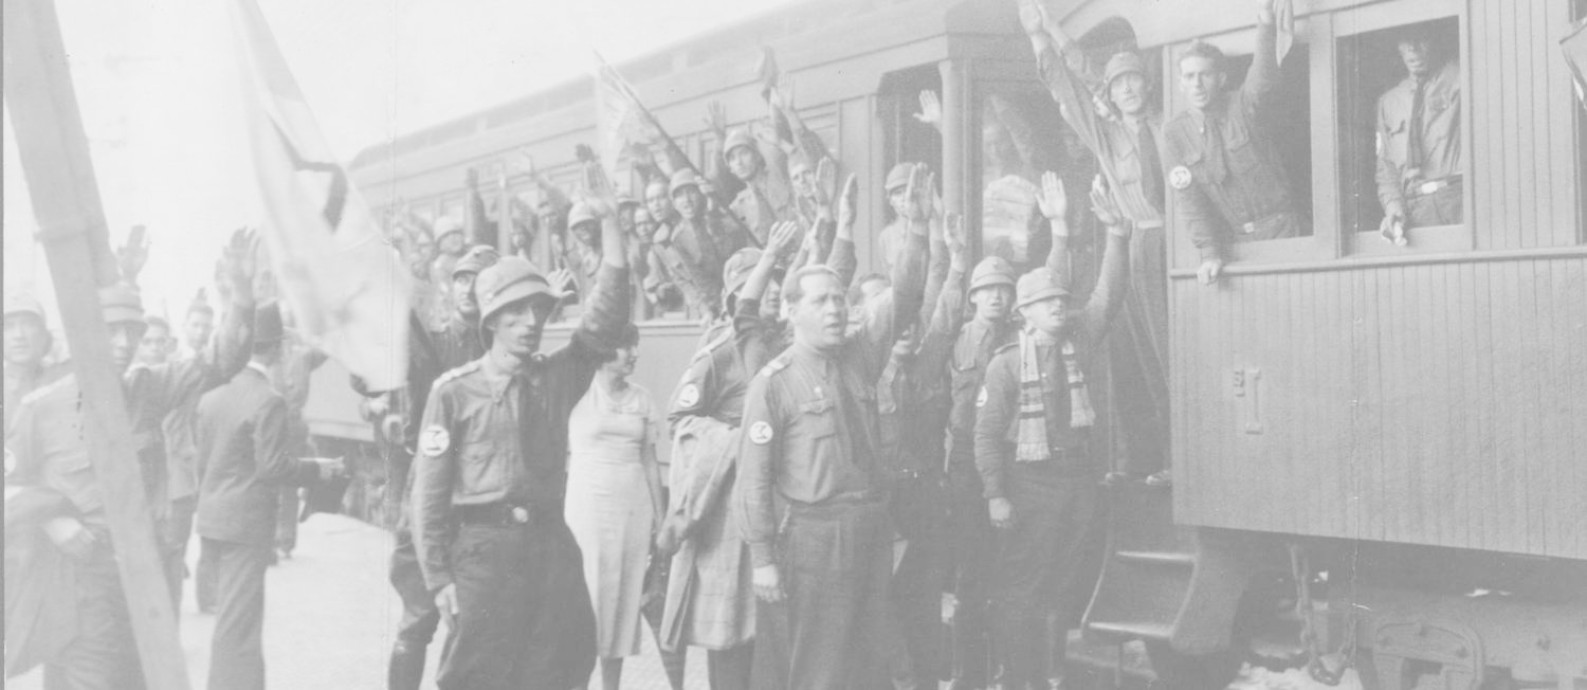 Manifestação de integralistas em 1930 Foto: Arquivo / O GLOBO